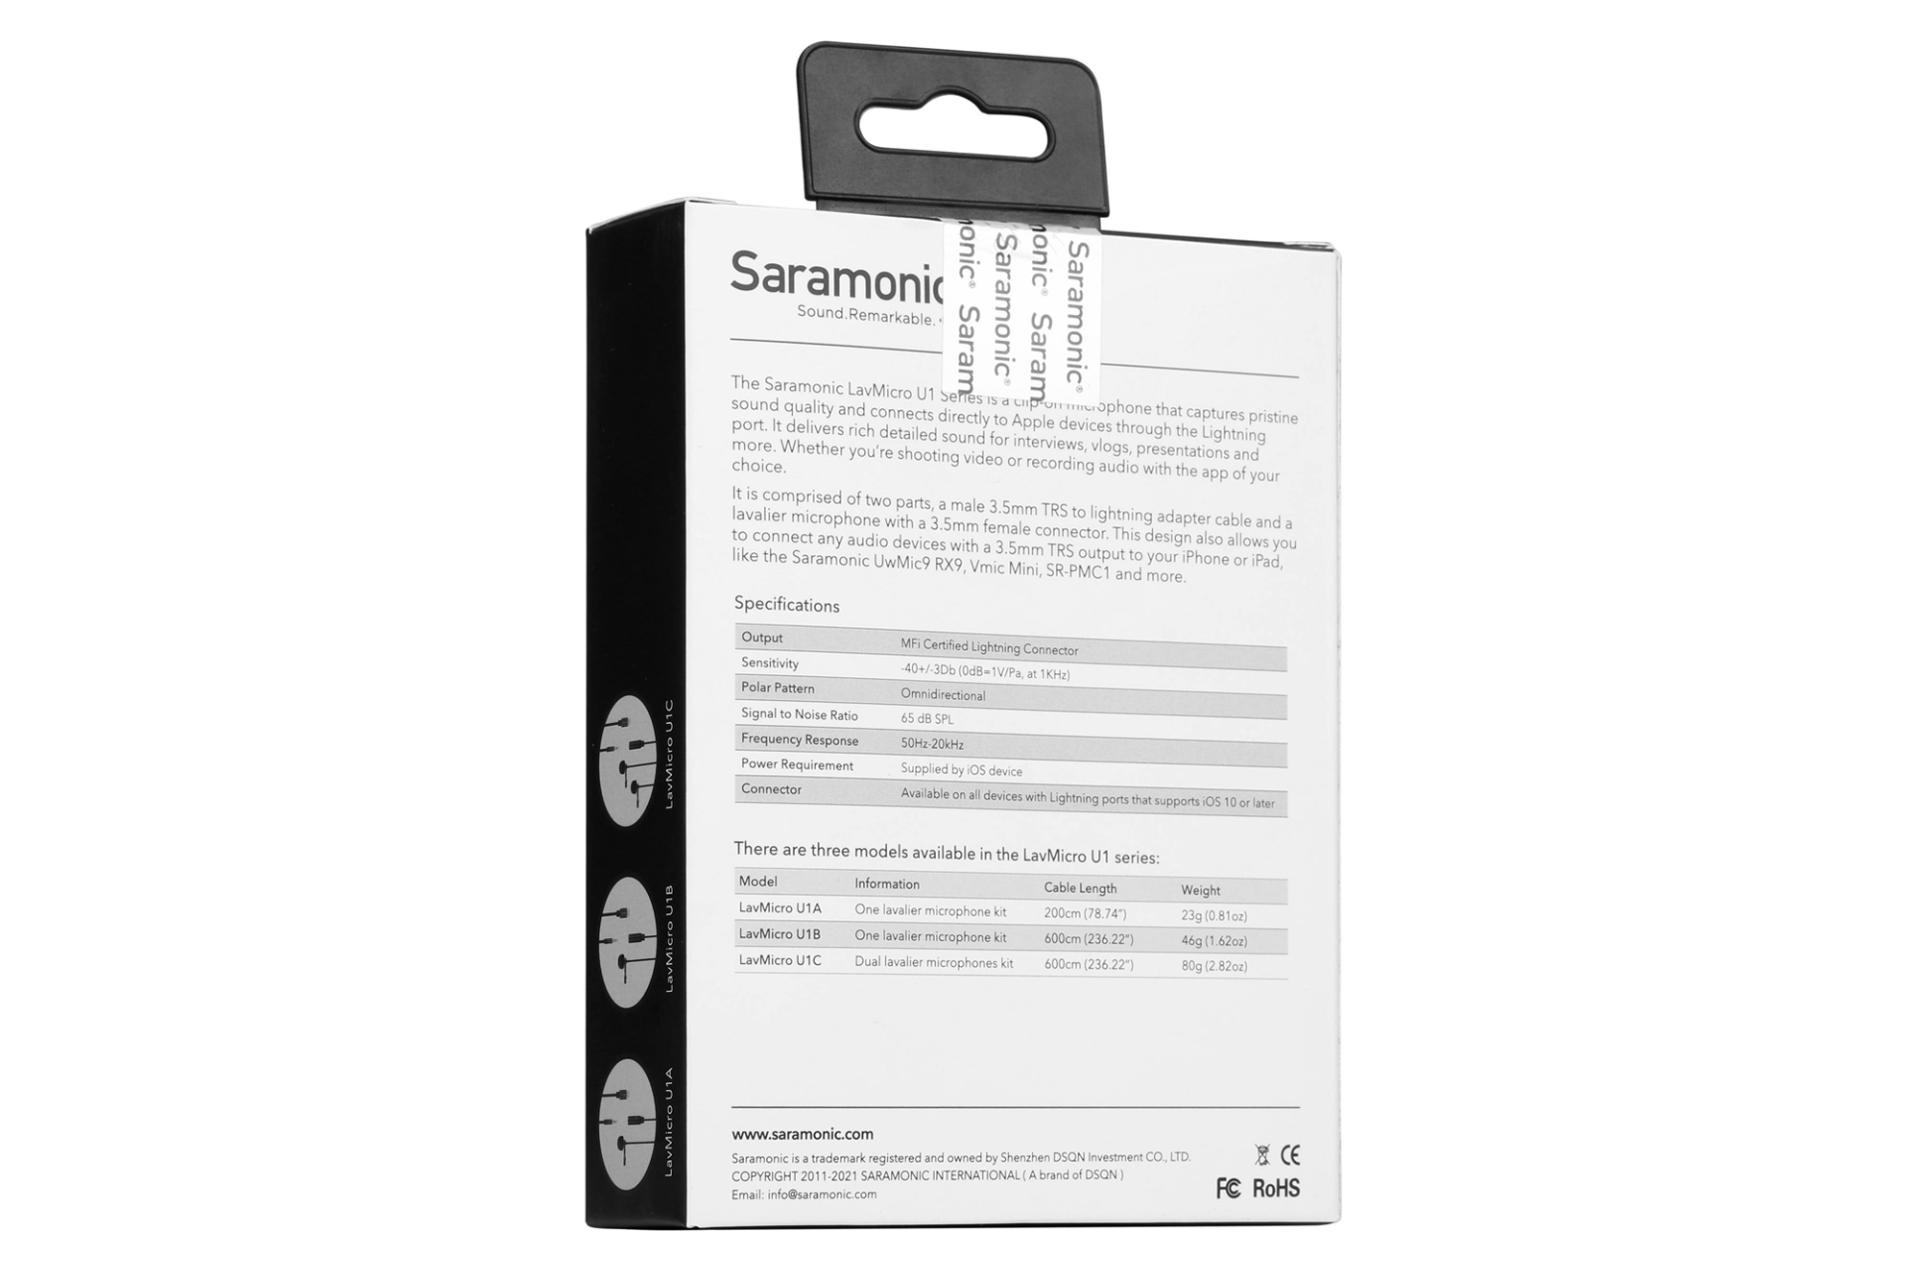 جعبه میکروفون سارامونیک Saramonic LavMicro U1A